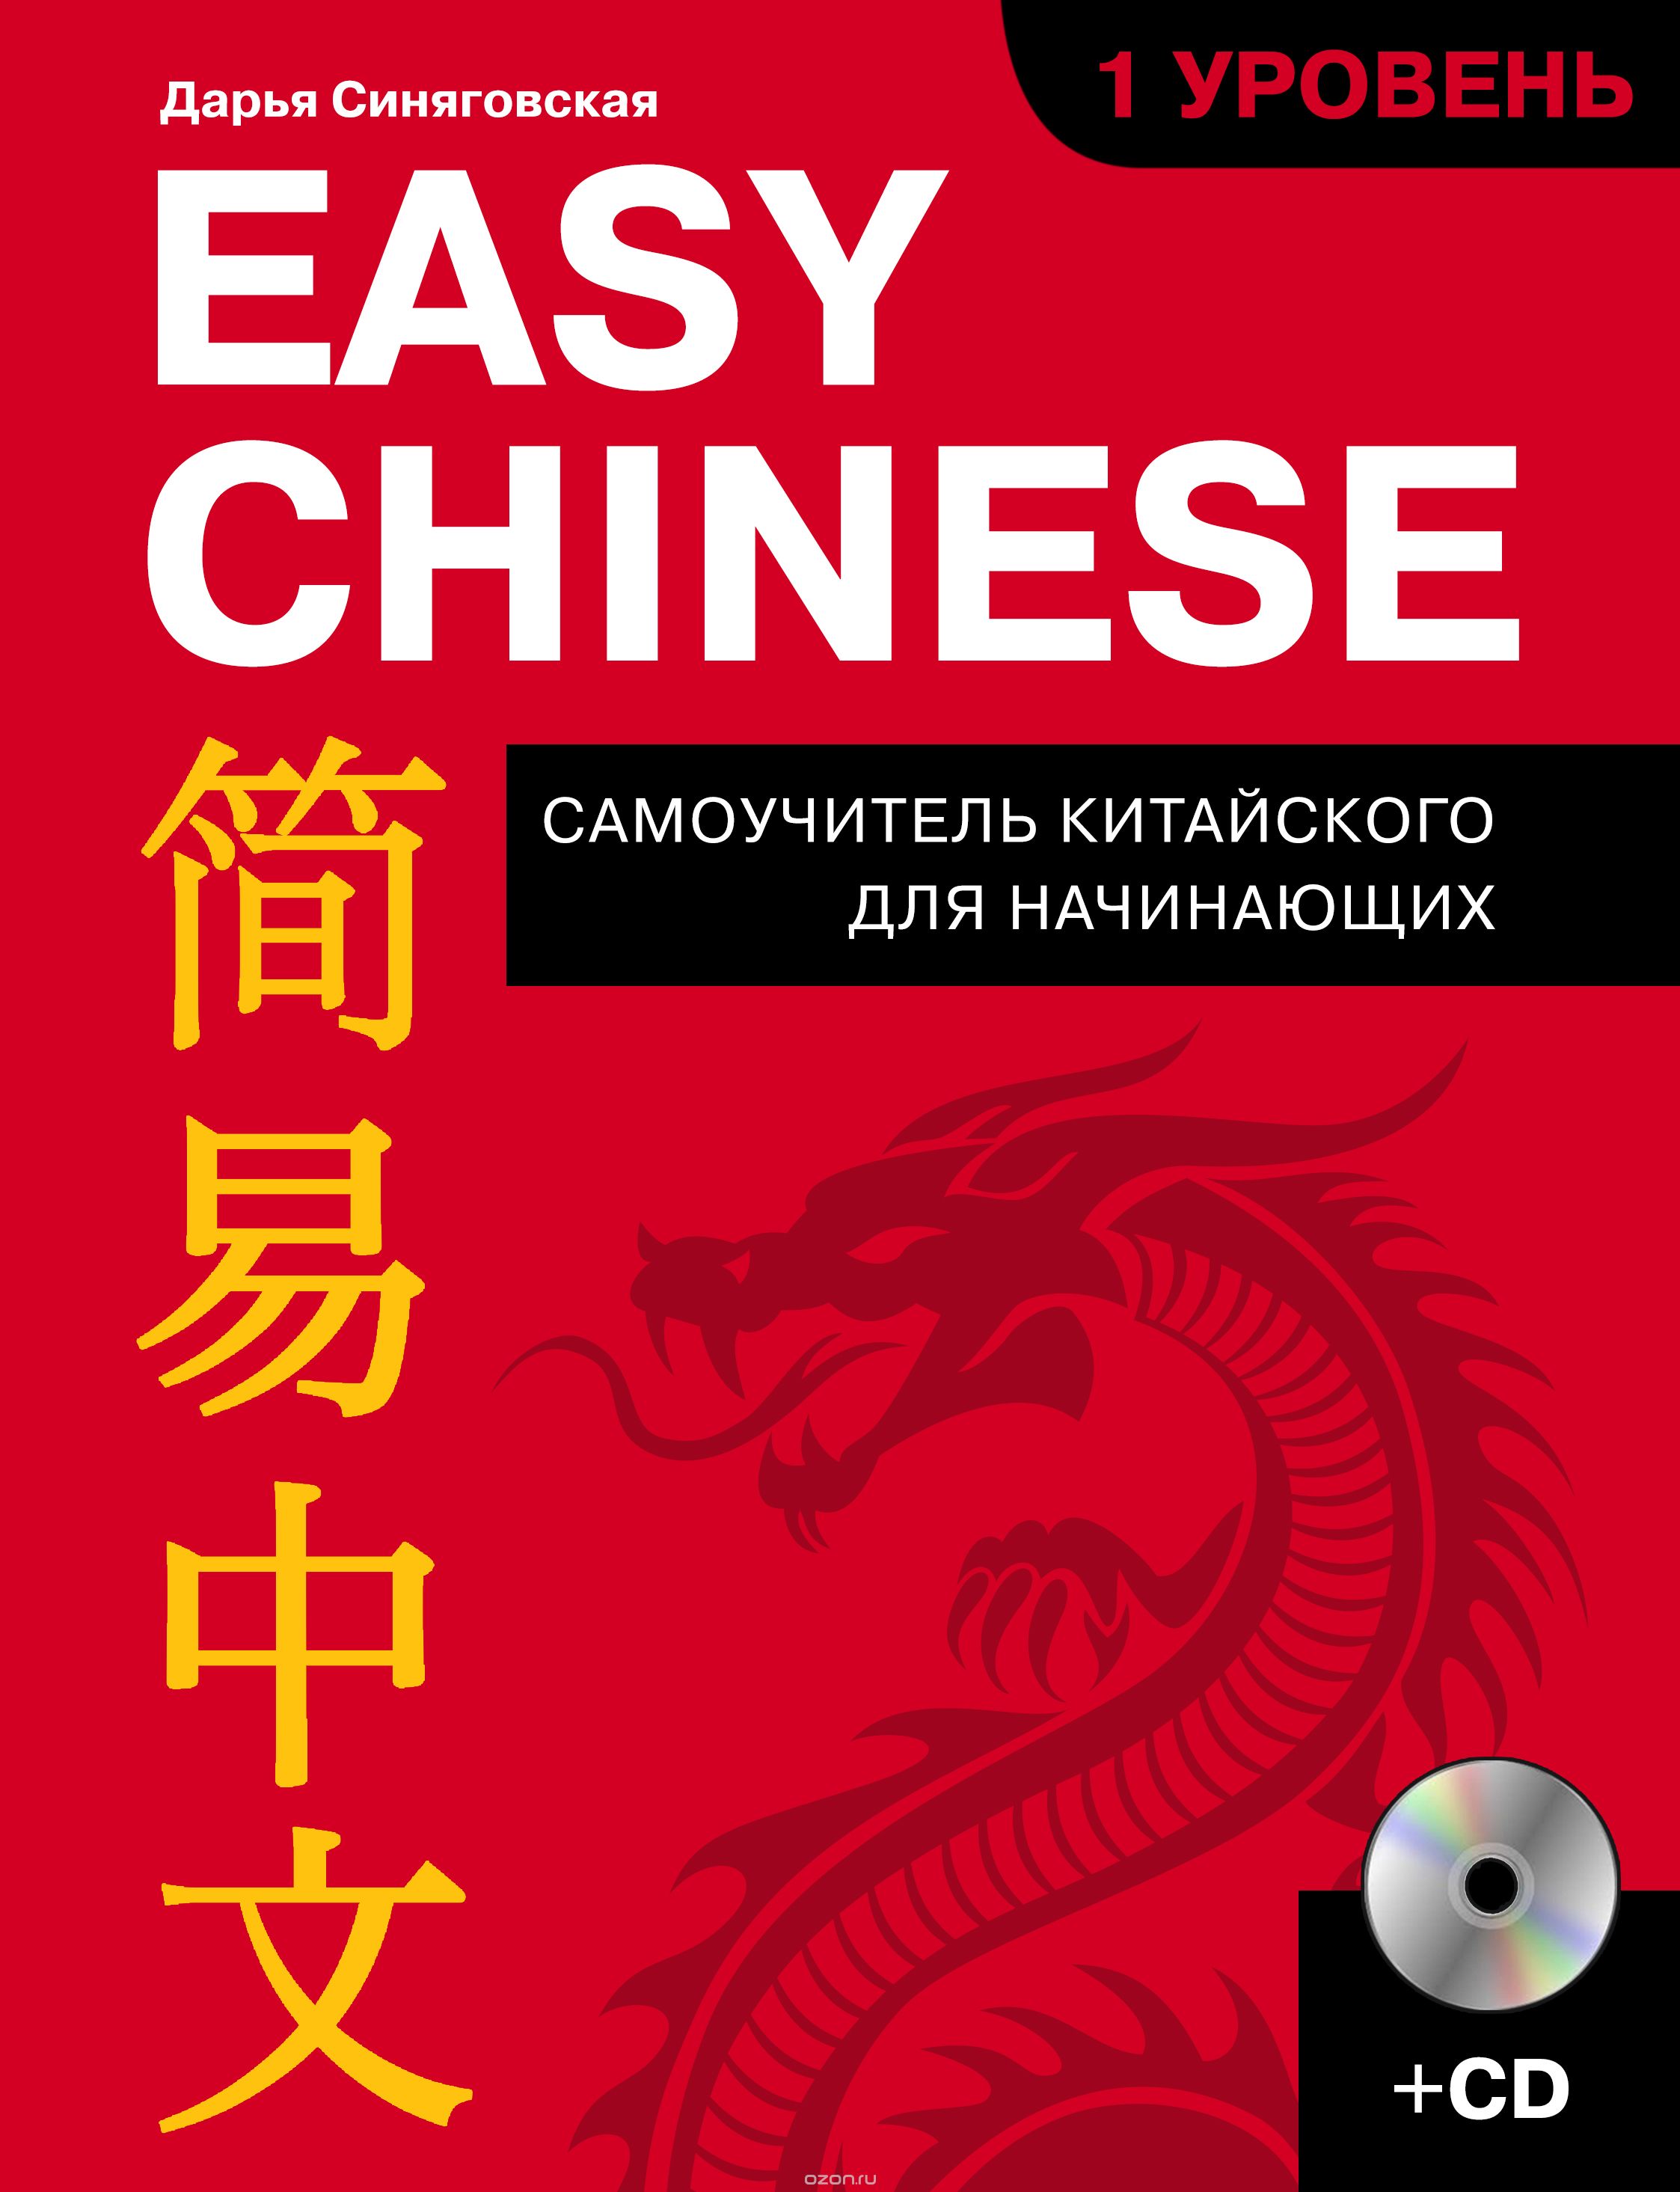 Easy Chinese. 1 уровень. Самоучитель китайского для начинающих (+ CD), Синяговская Дарья Константиновна